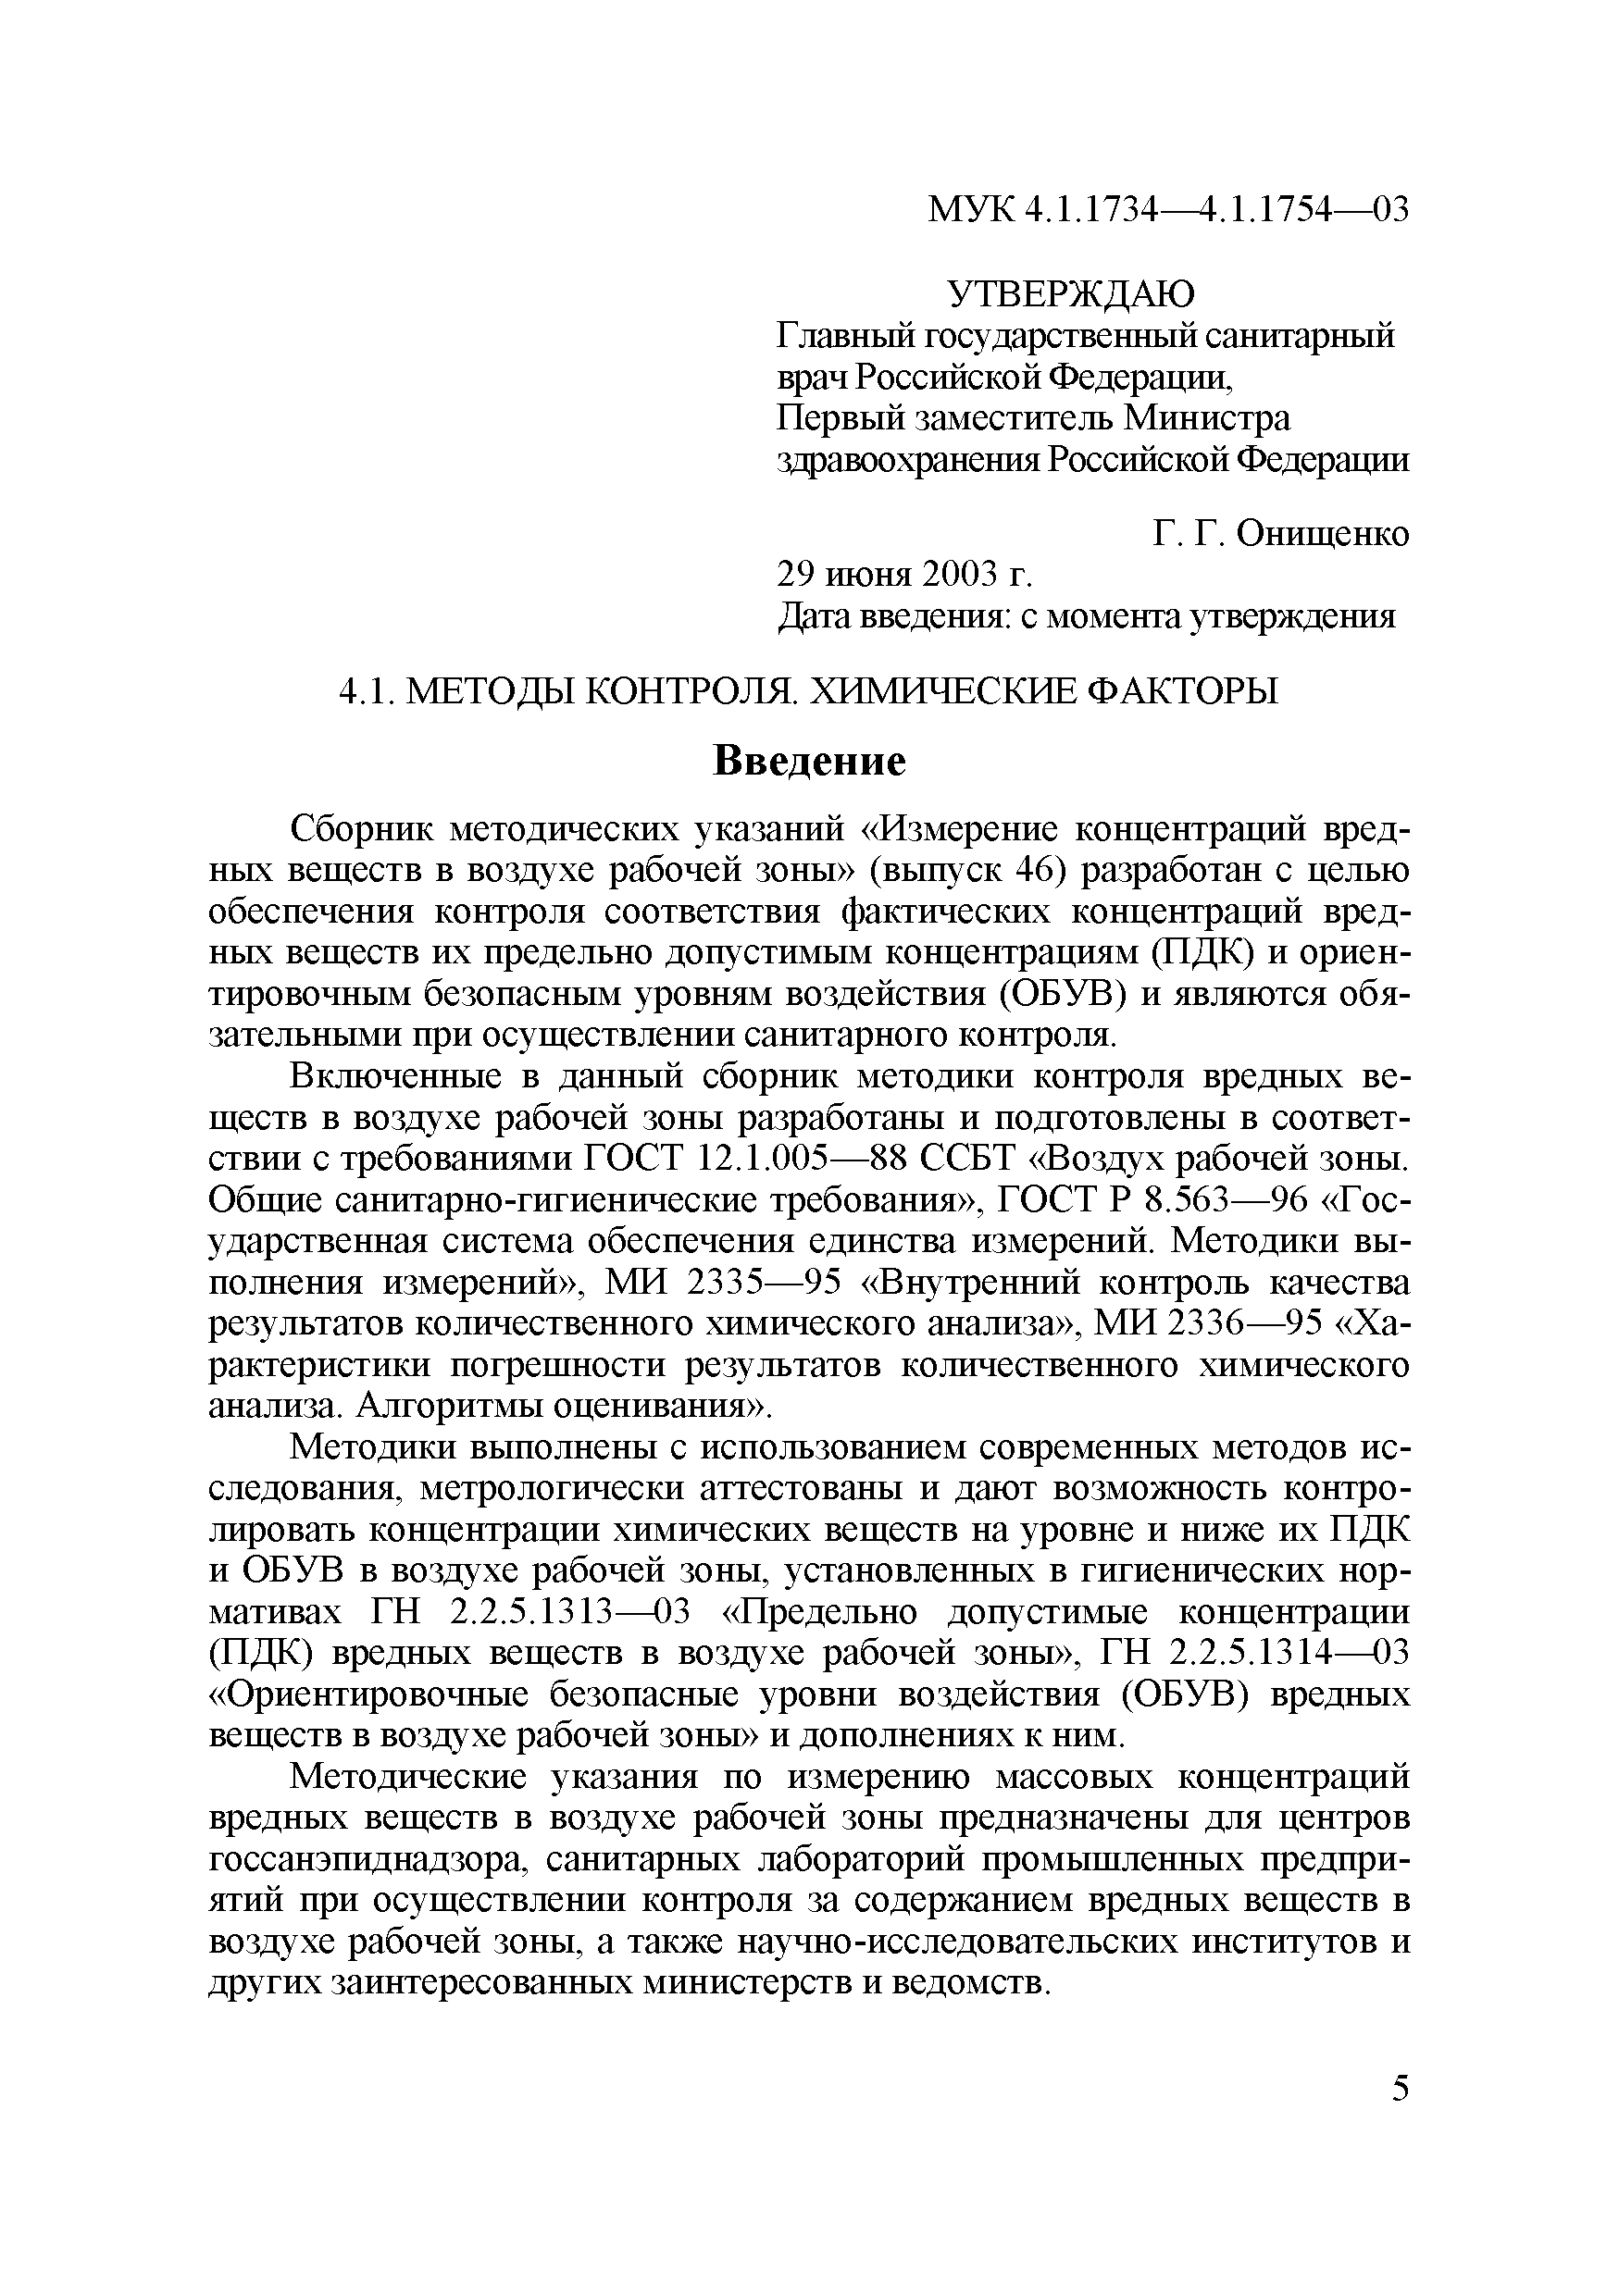 МУК 4.1.1740-03